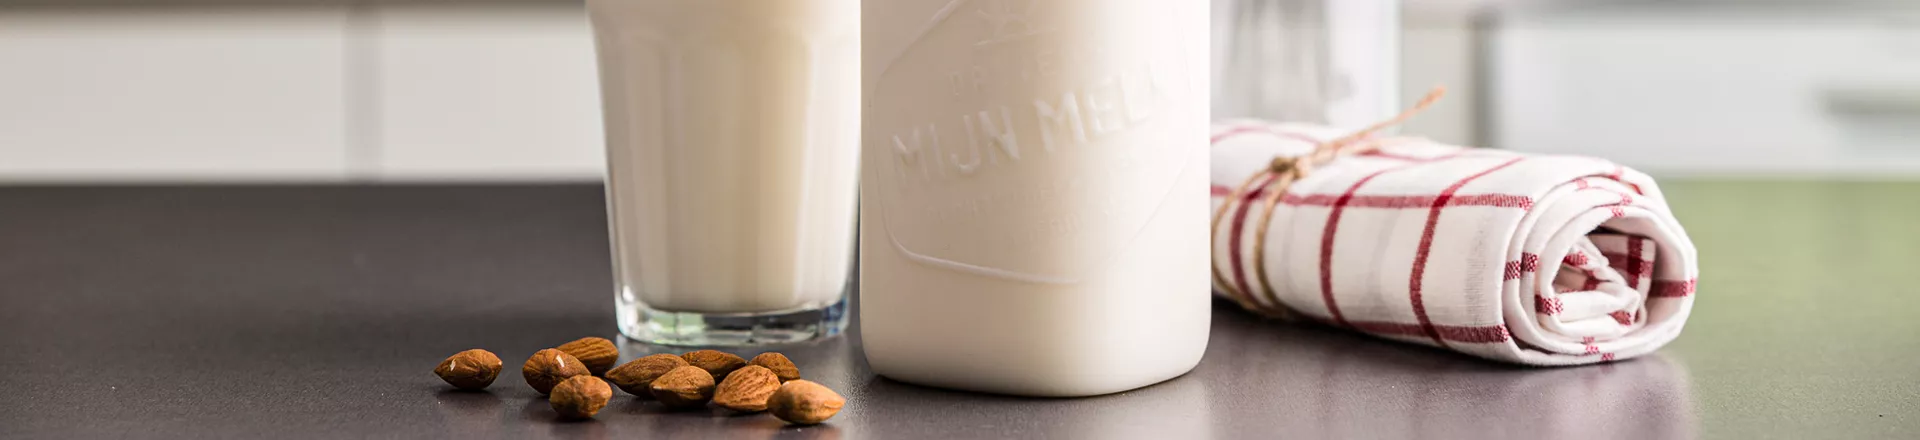 Formulär mjölkflaska 2019